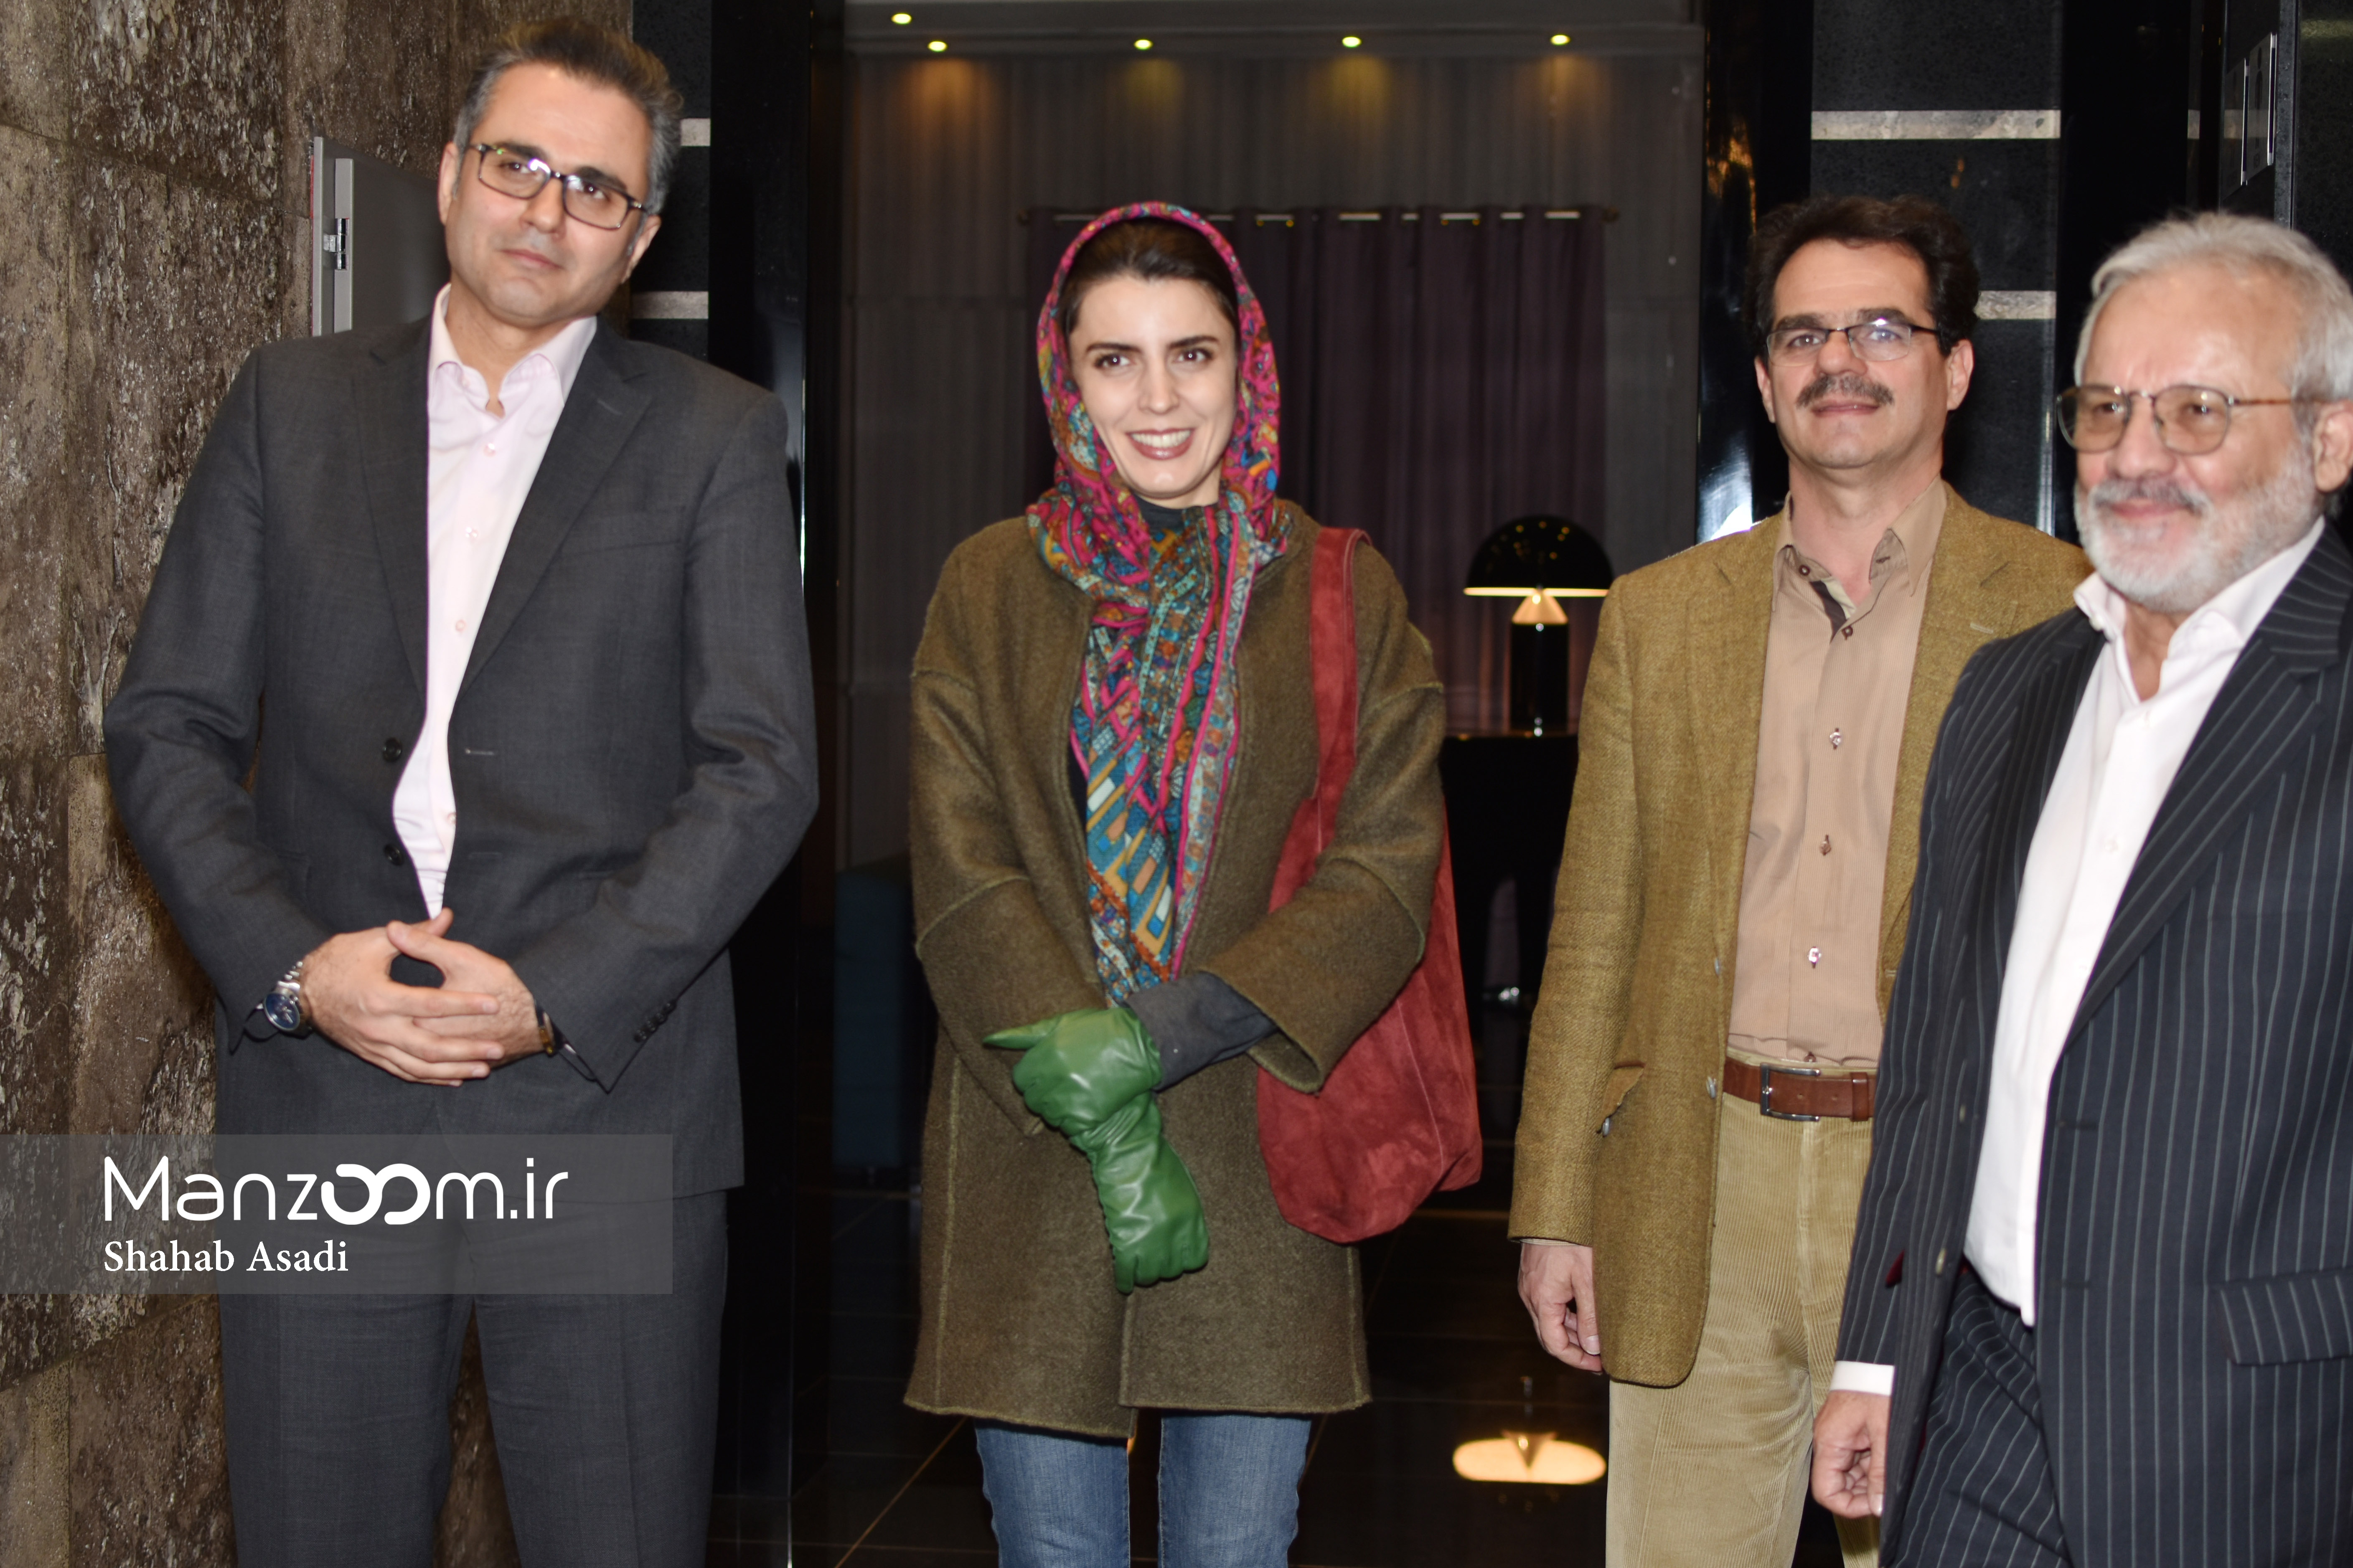 لیلا حاتمی در اکران افتتاحیه فیلم سینمایی وارونگی